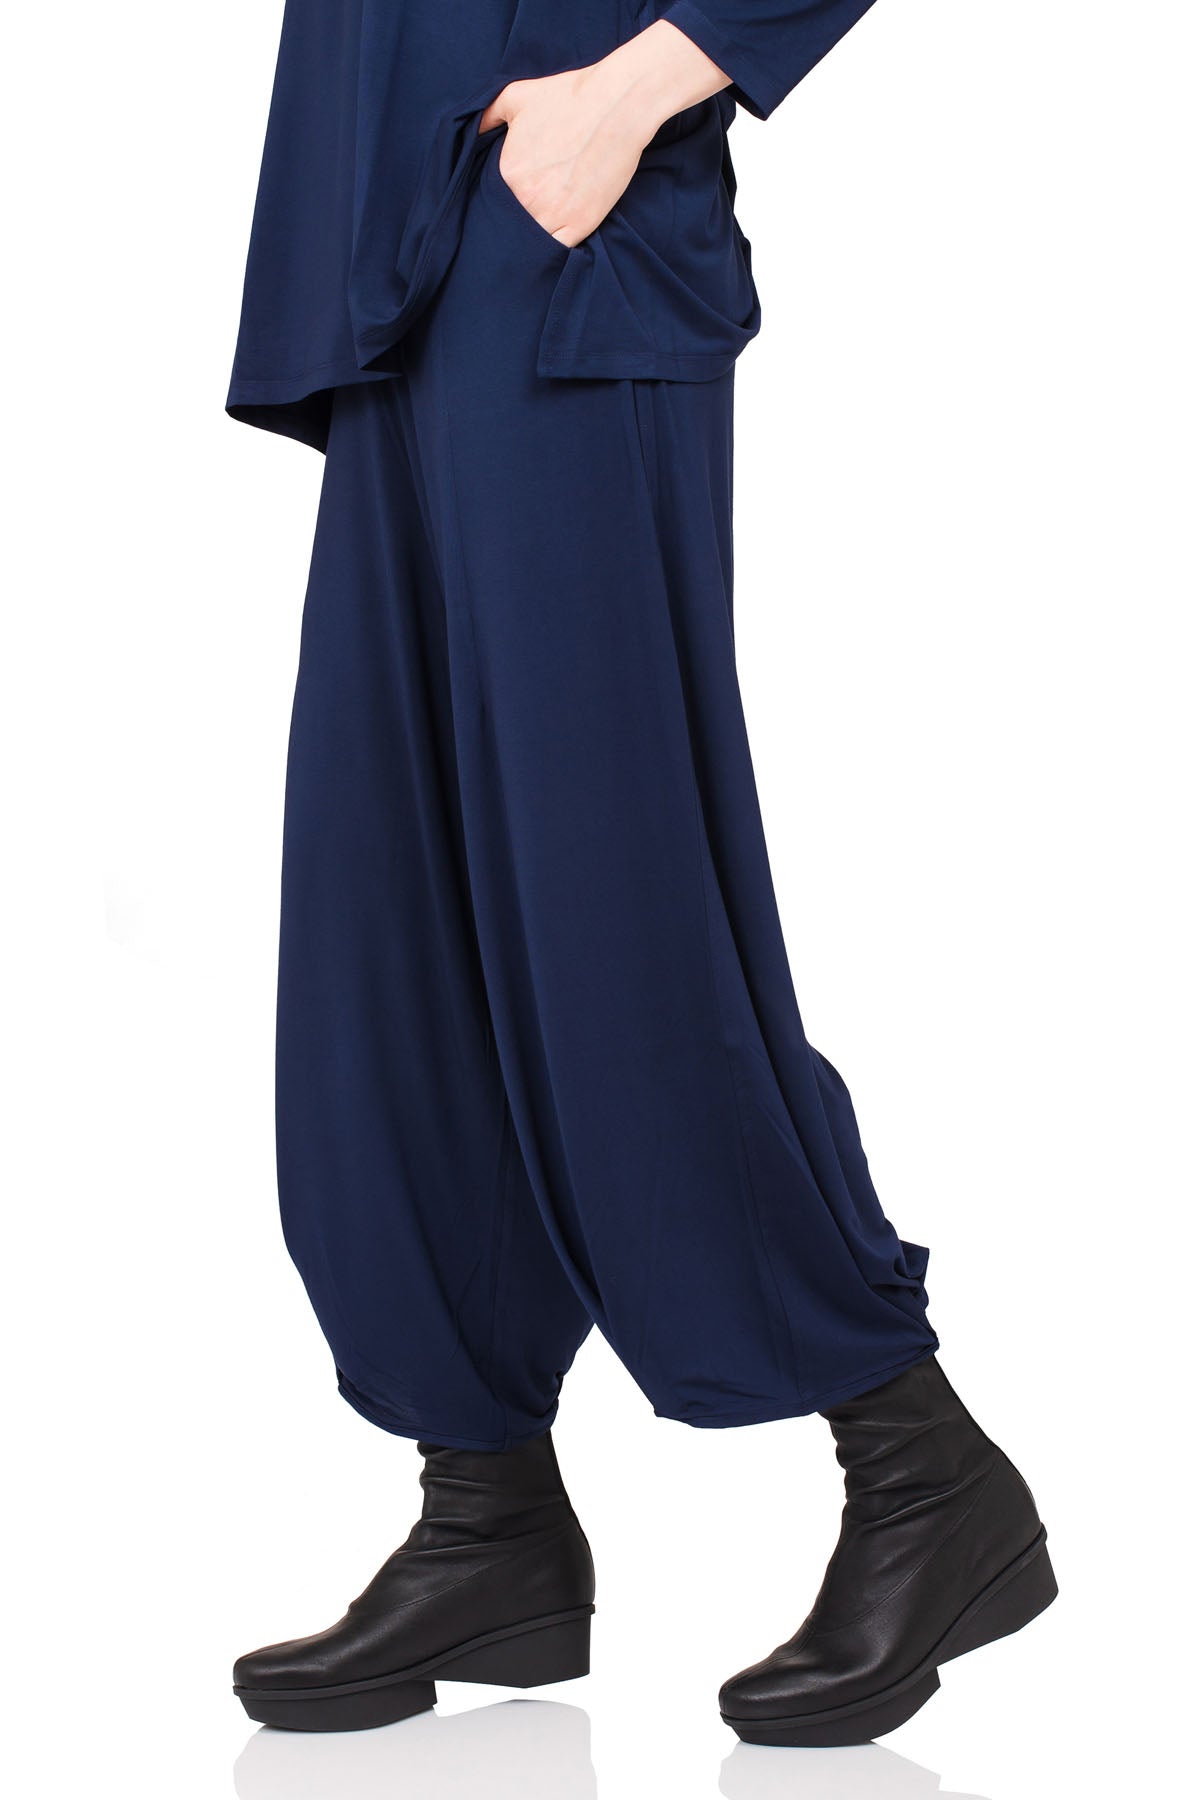 Chic & Simple Συνδυασμός Μπλούζα Άννα & Παντελόνι Αριάδνη - Μπλε Σκούρο